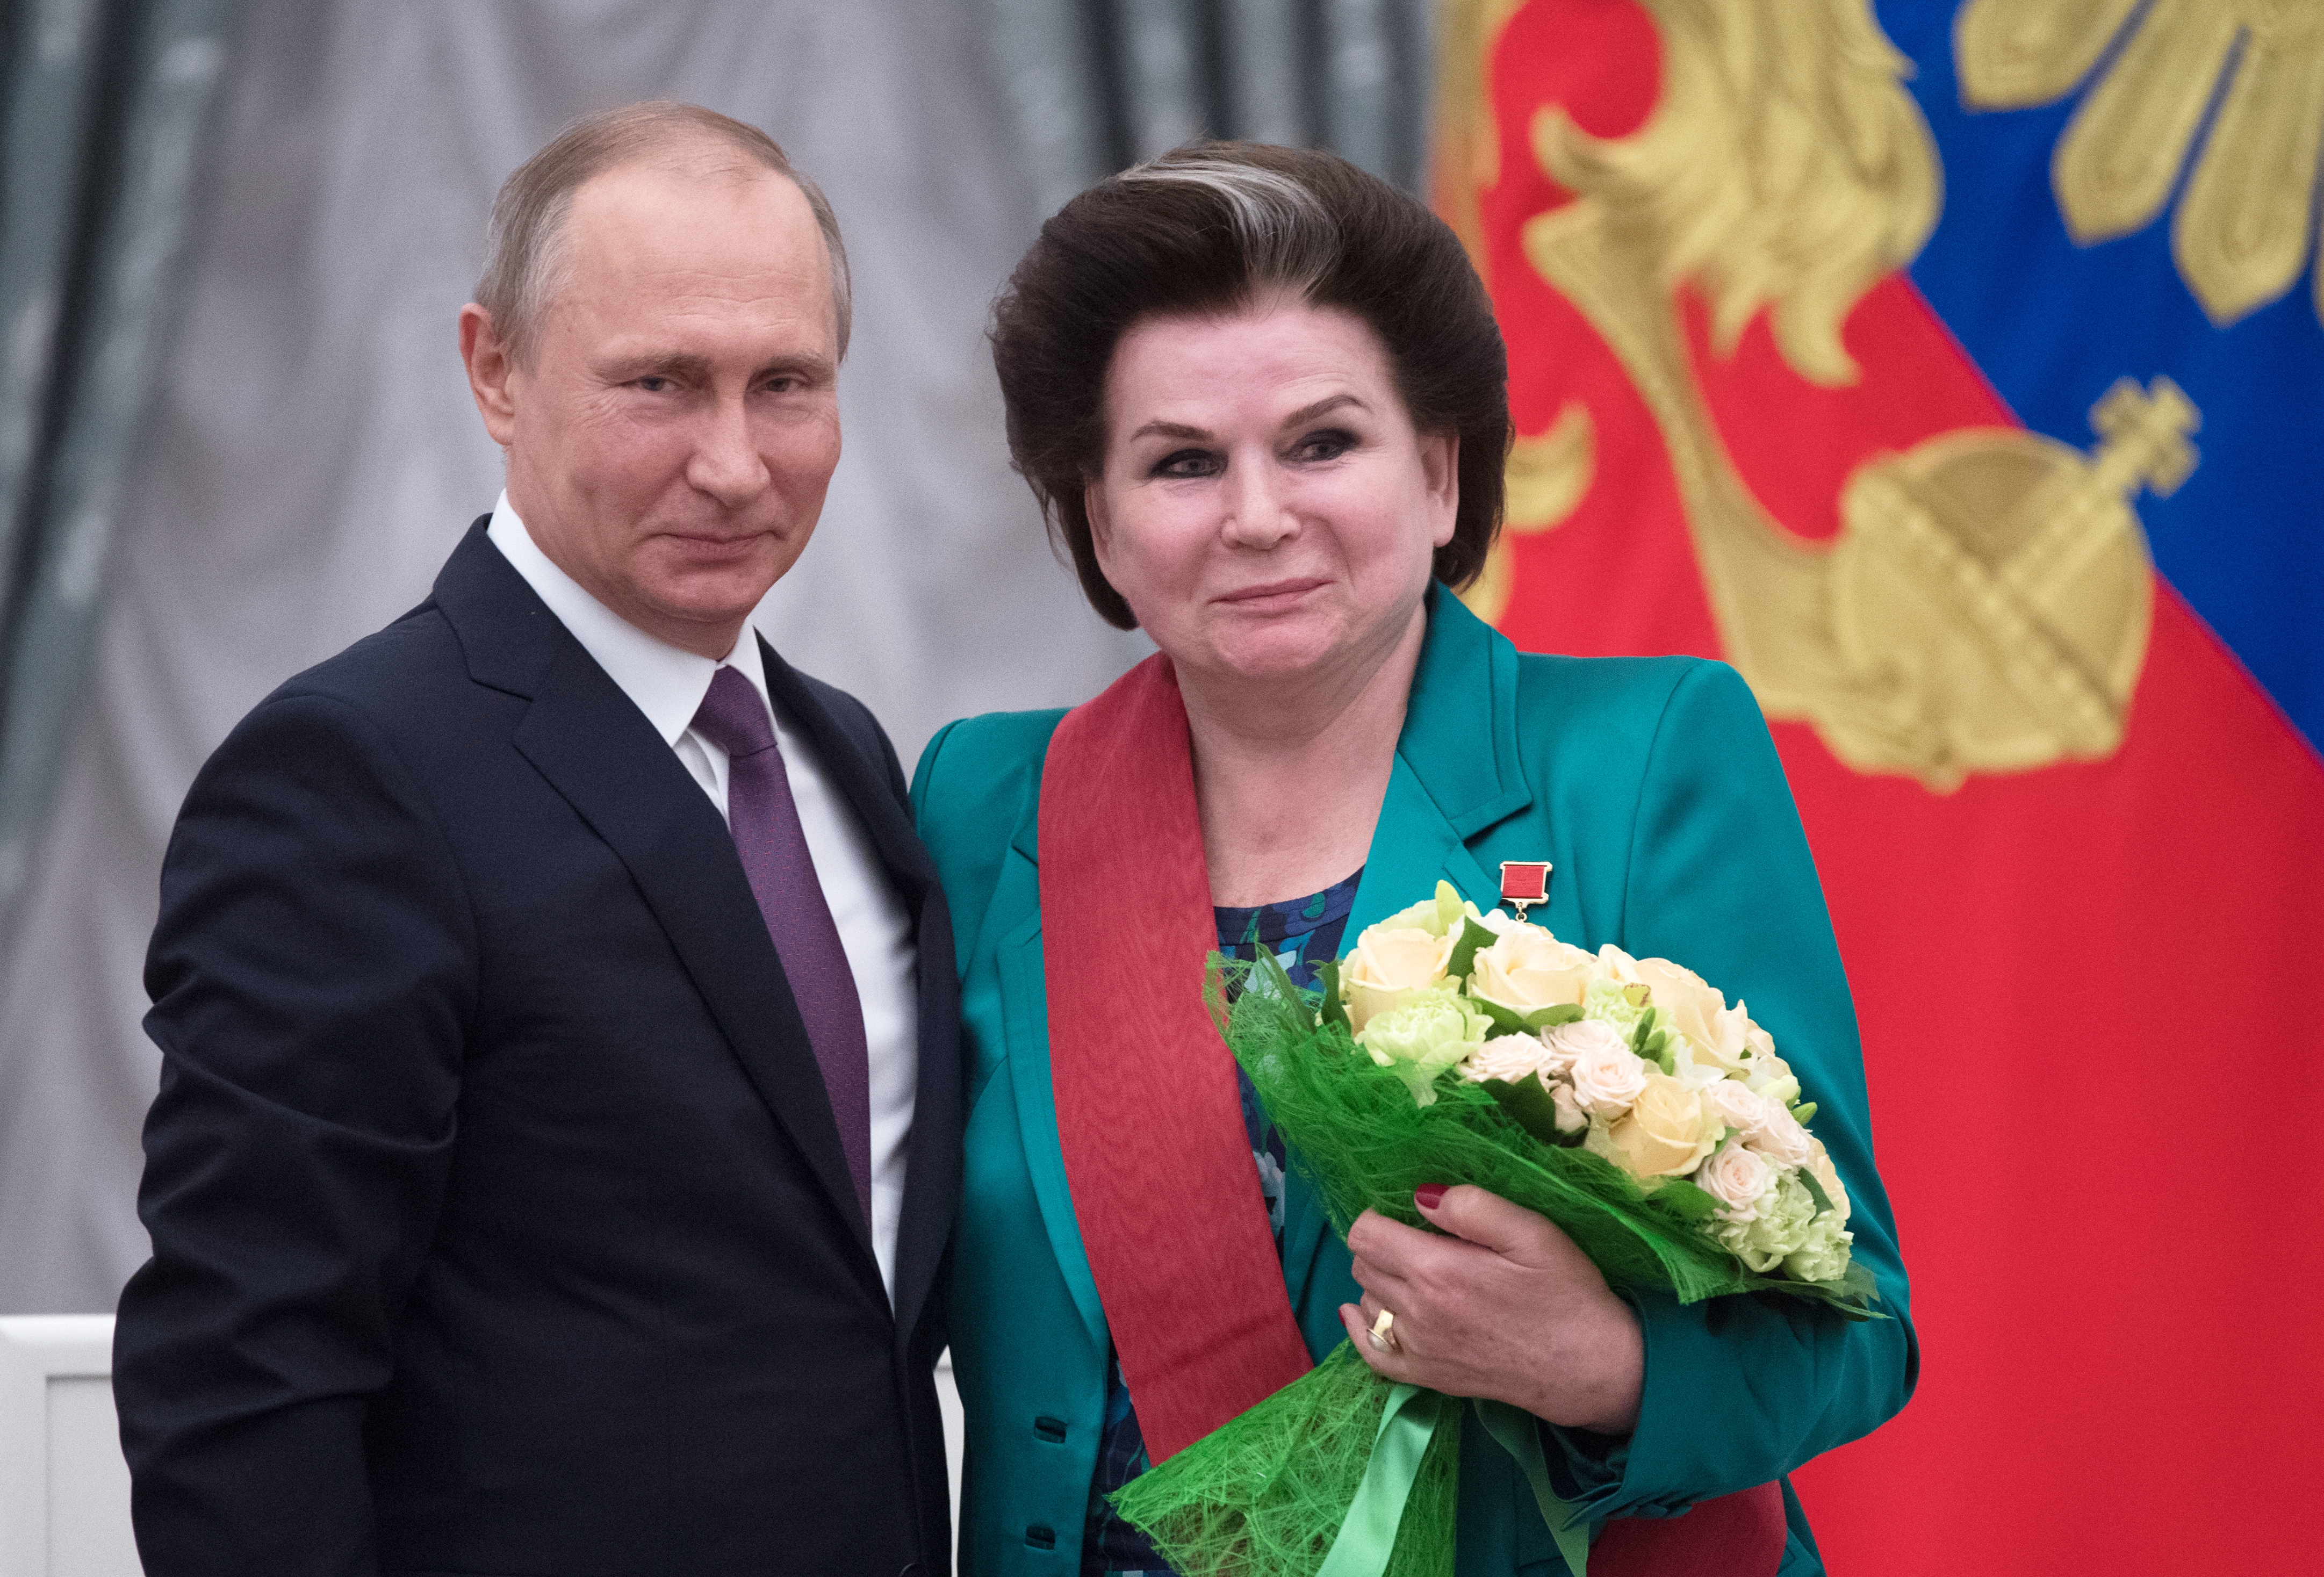 Tyereskova javaslatával lehet Putyin újra elnök